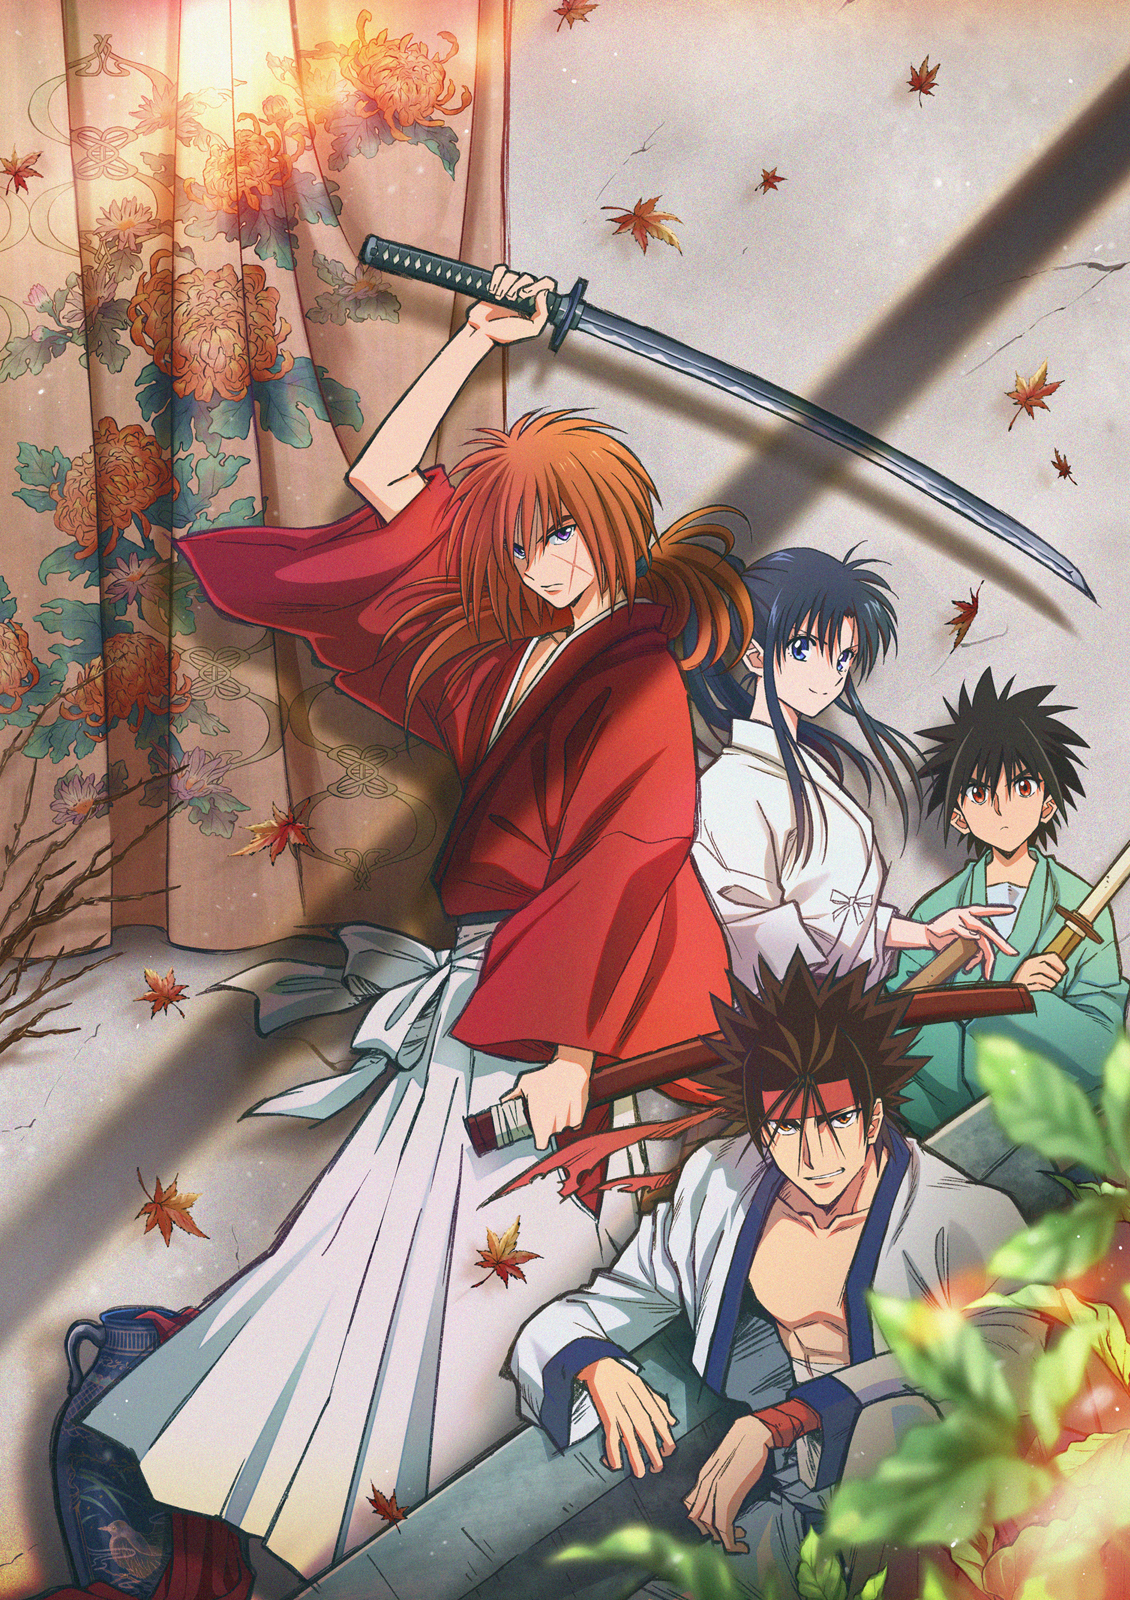 Rurouni Kenshin: Meiji Kenkaku Romantan (2023) - PV - BiliBili